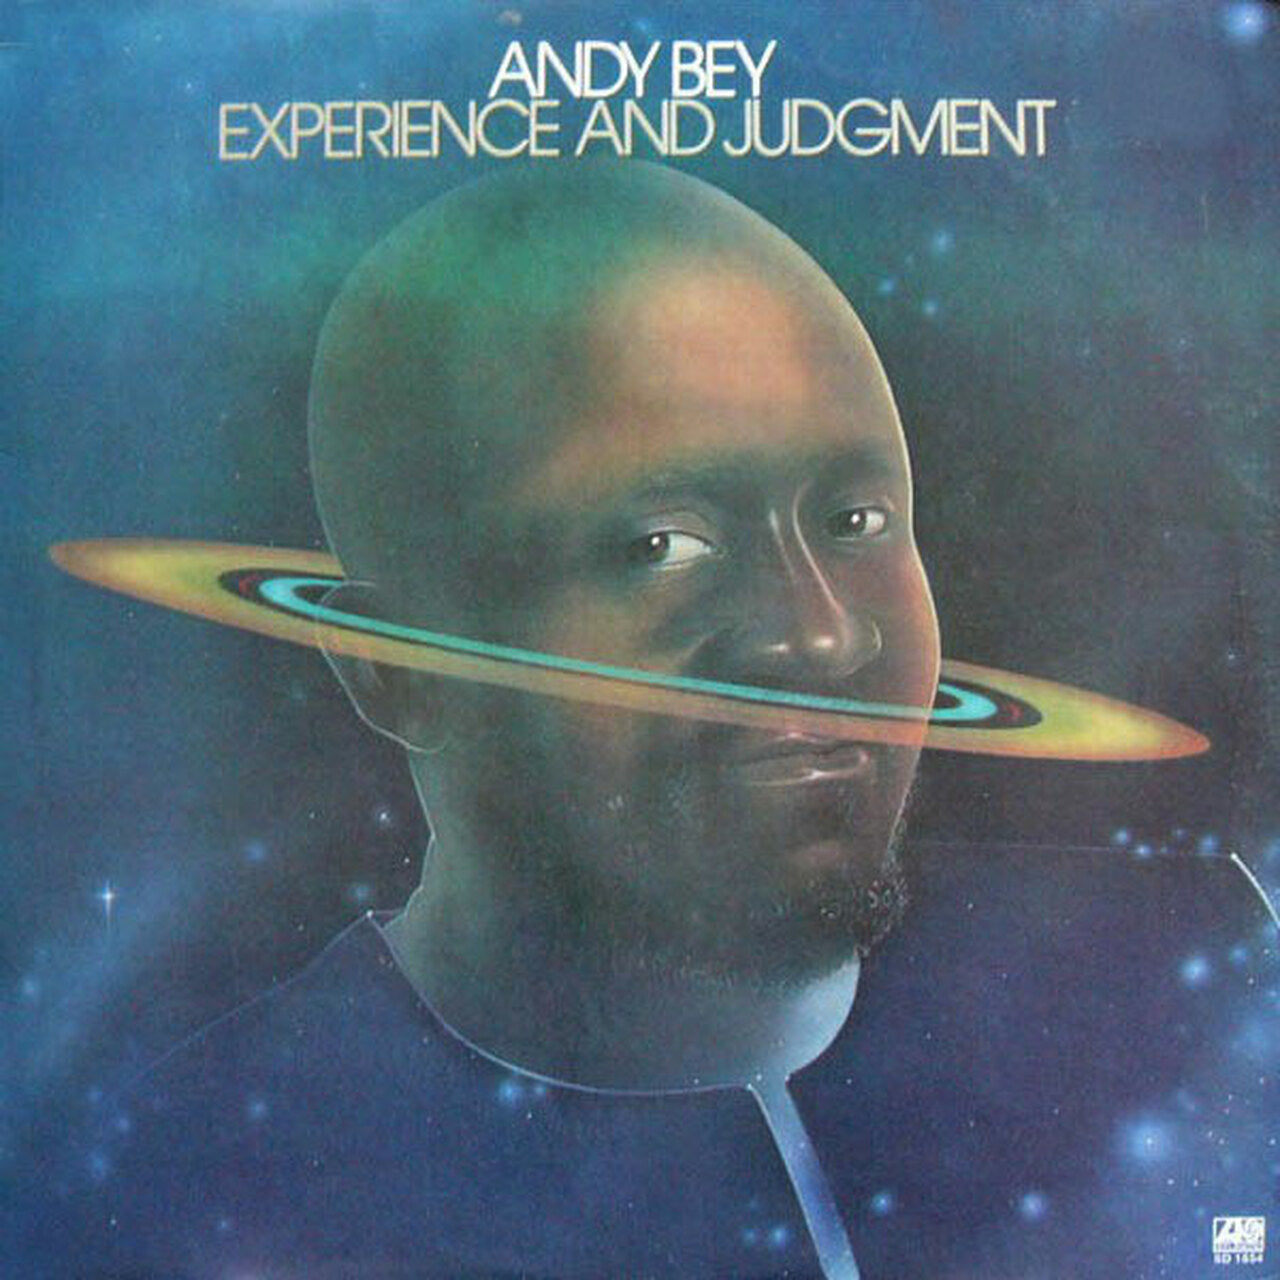 Andy Bey - Experiencia y juicio - Speakers Corner LP 